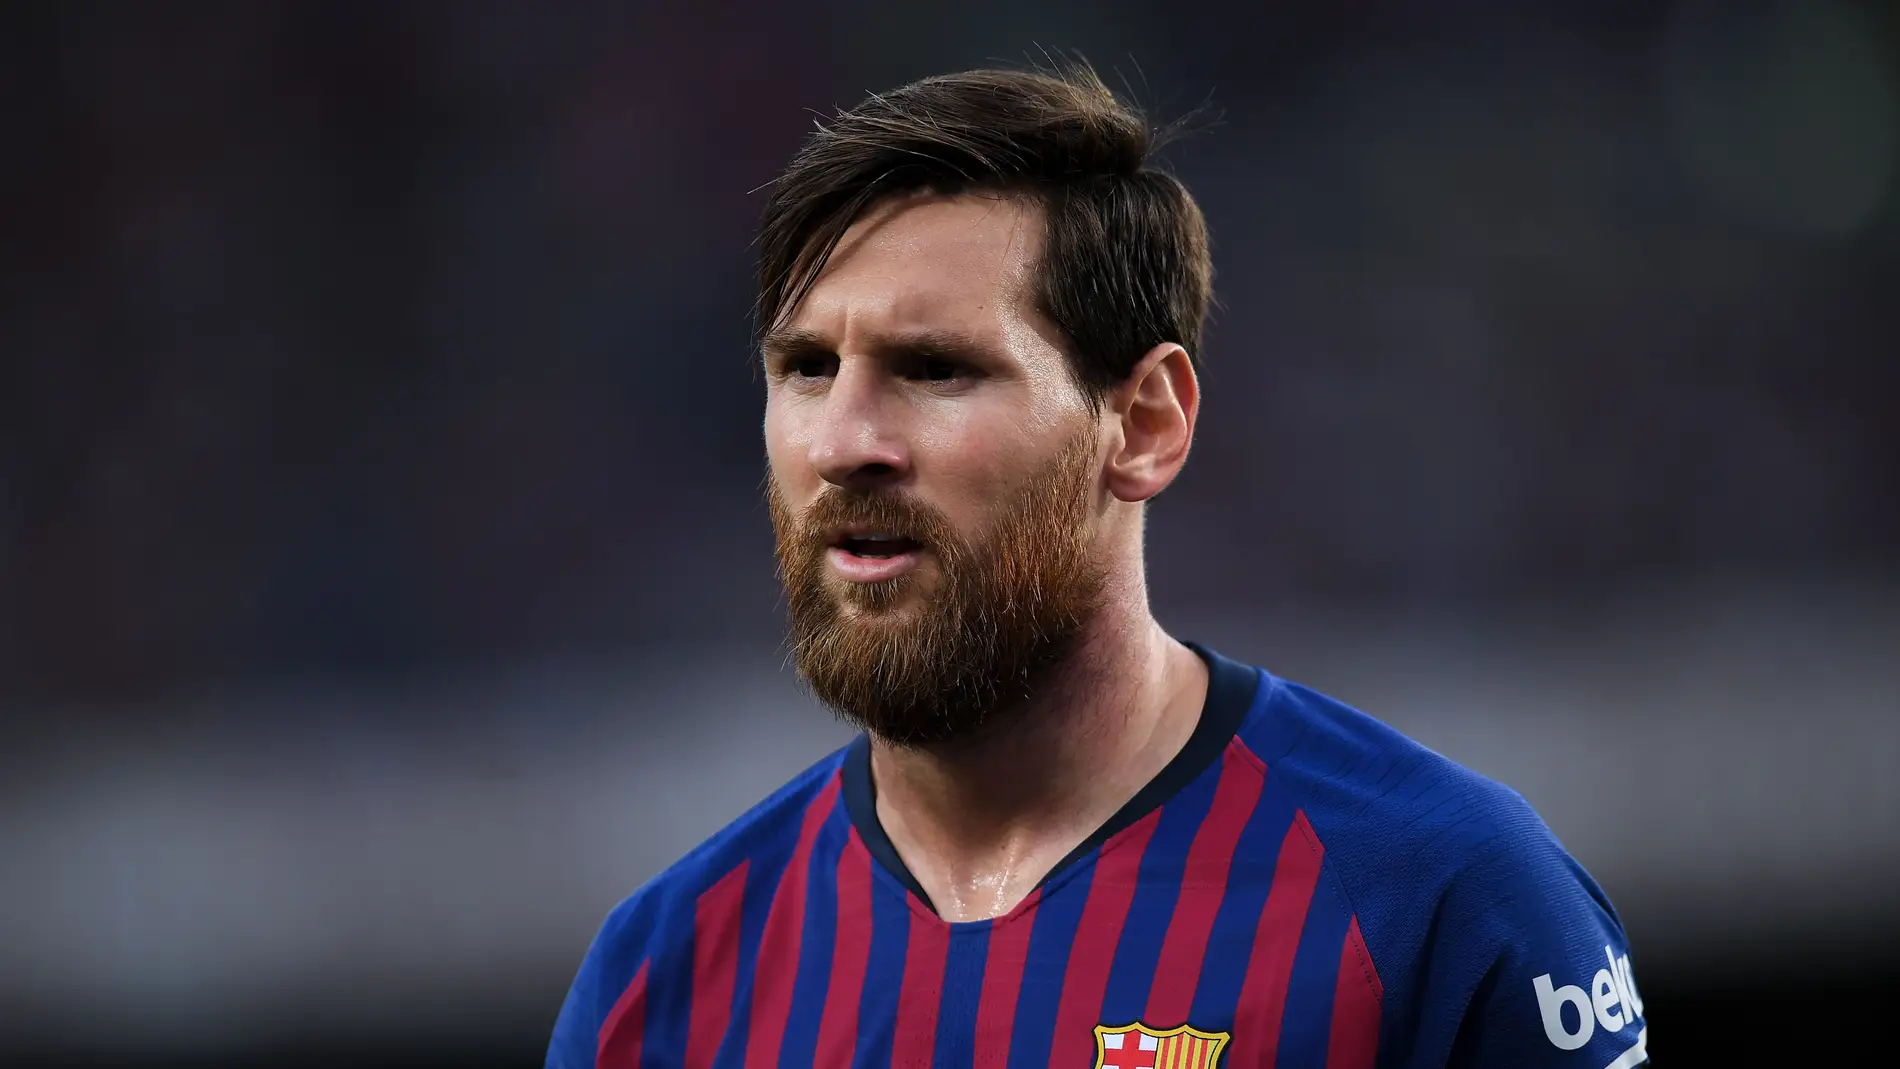 Leo Messi en un partido de liga